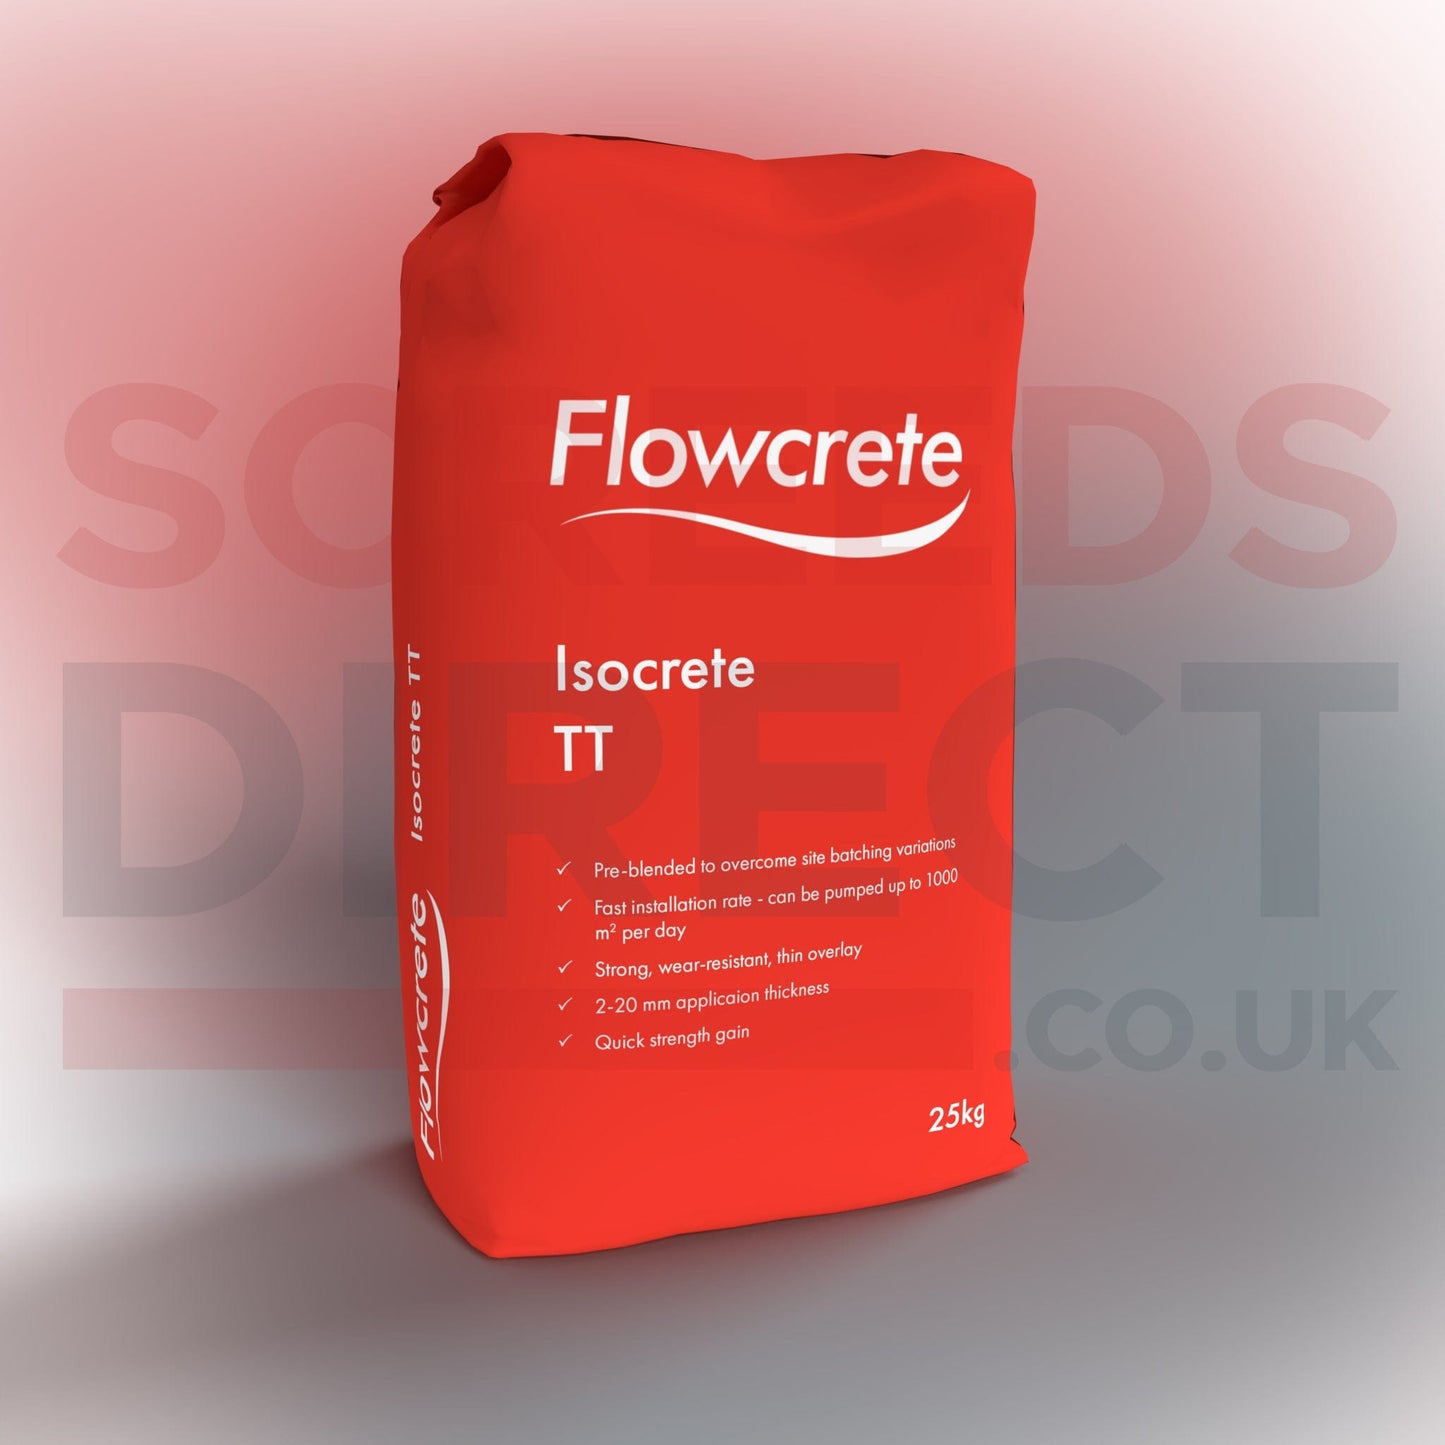 Flowcrete Flowcrete Isocrete TT Flowcrete Isocrete TT 25kg